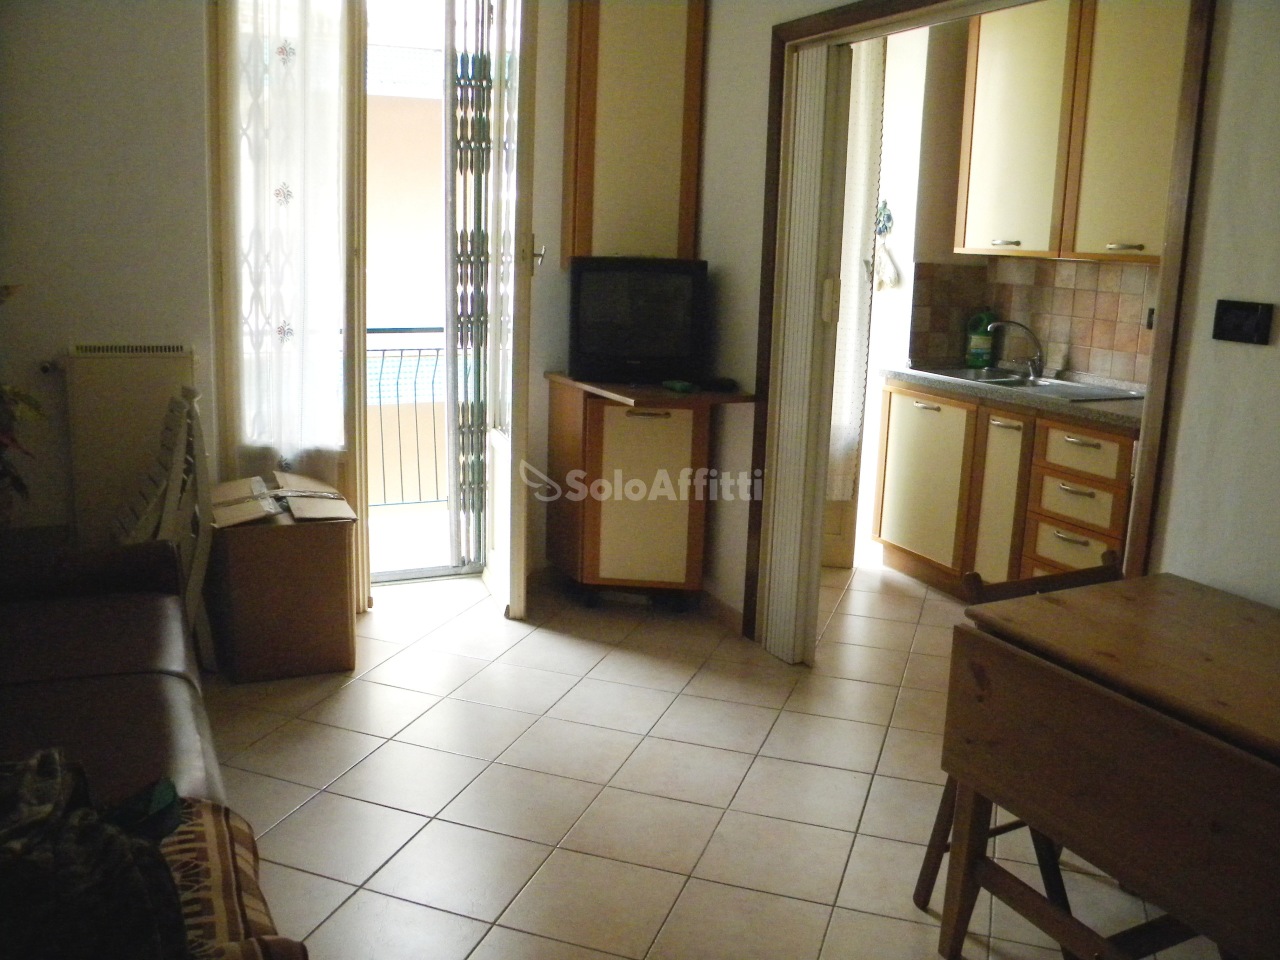 Appartamento in affitto a Rapallo, 2 locali, prezzo € 430 | PortaleAgenzieImmobiliari.it